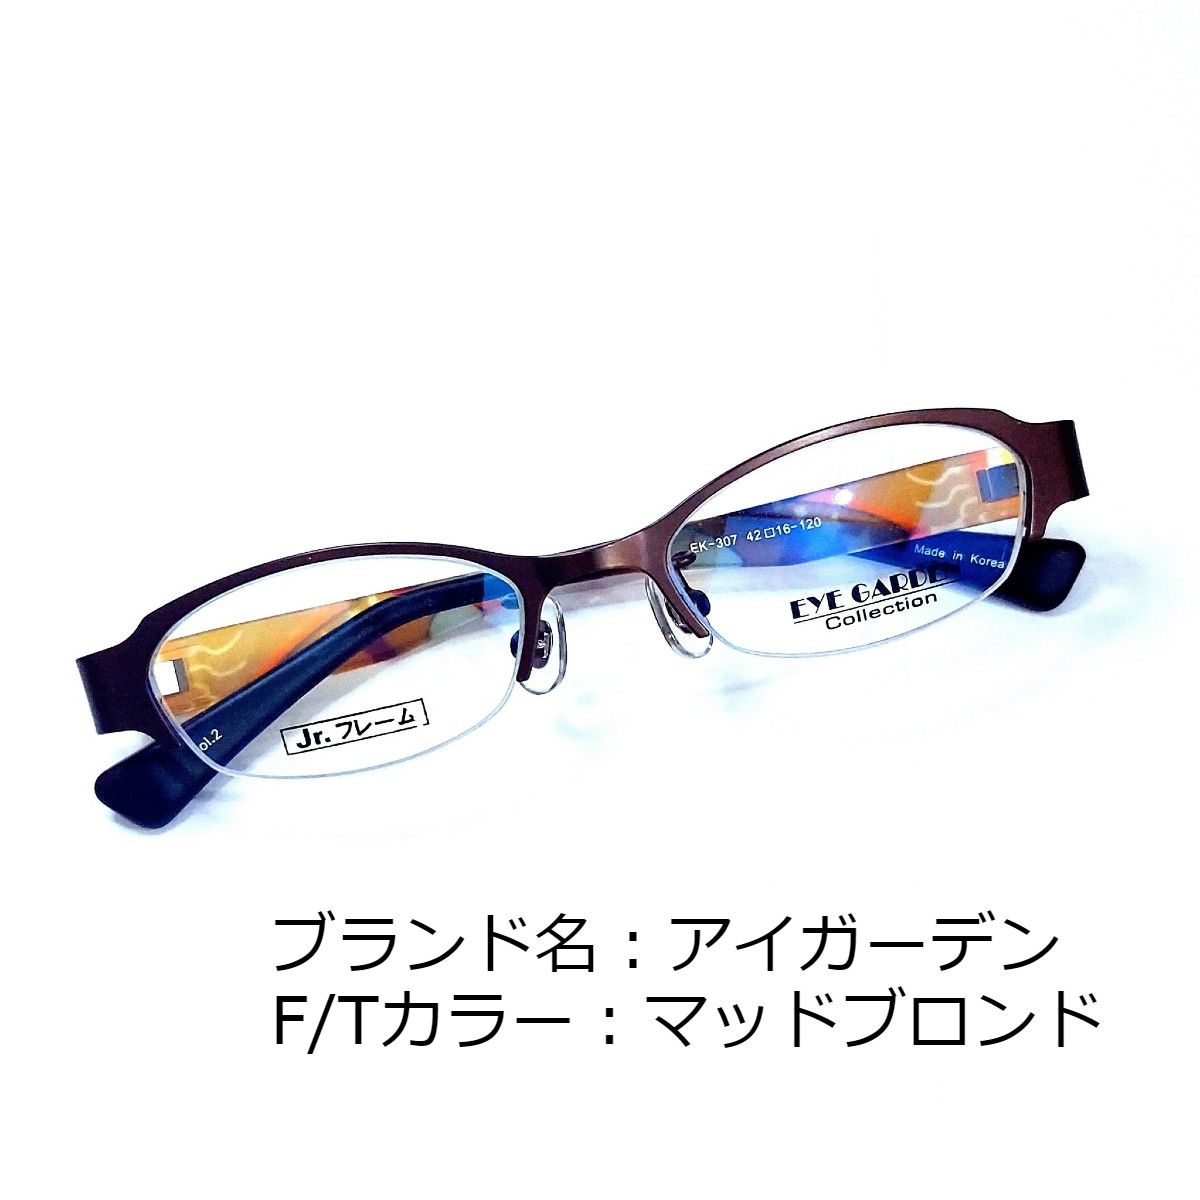 日本価格 No.1620メガネ EYE GARDEN【度数入り込み価格】 | www ...